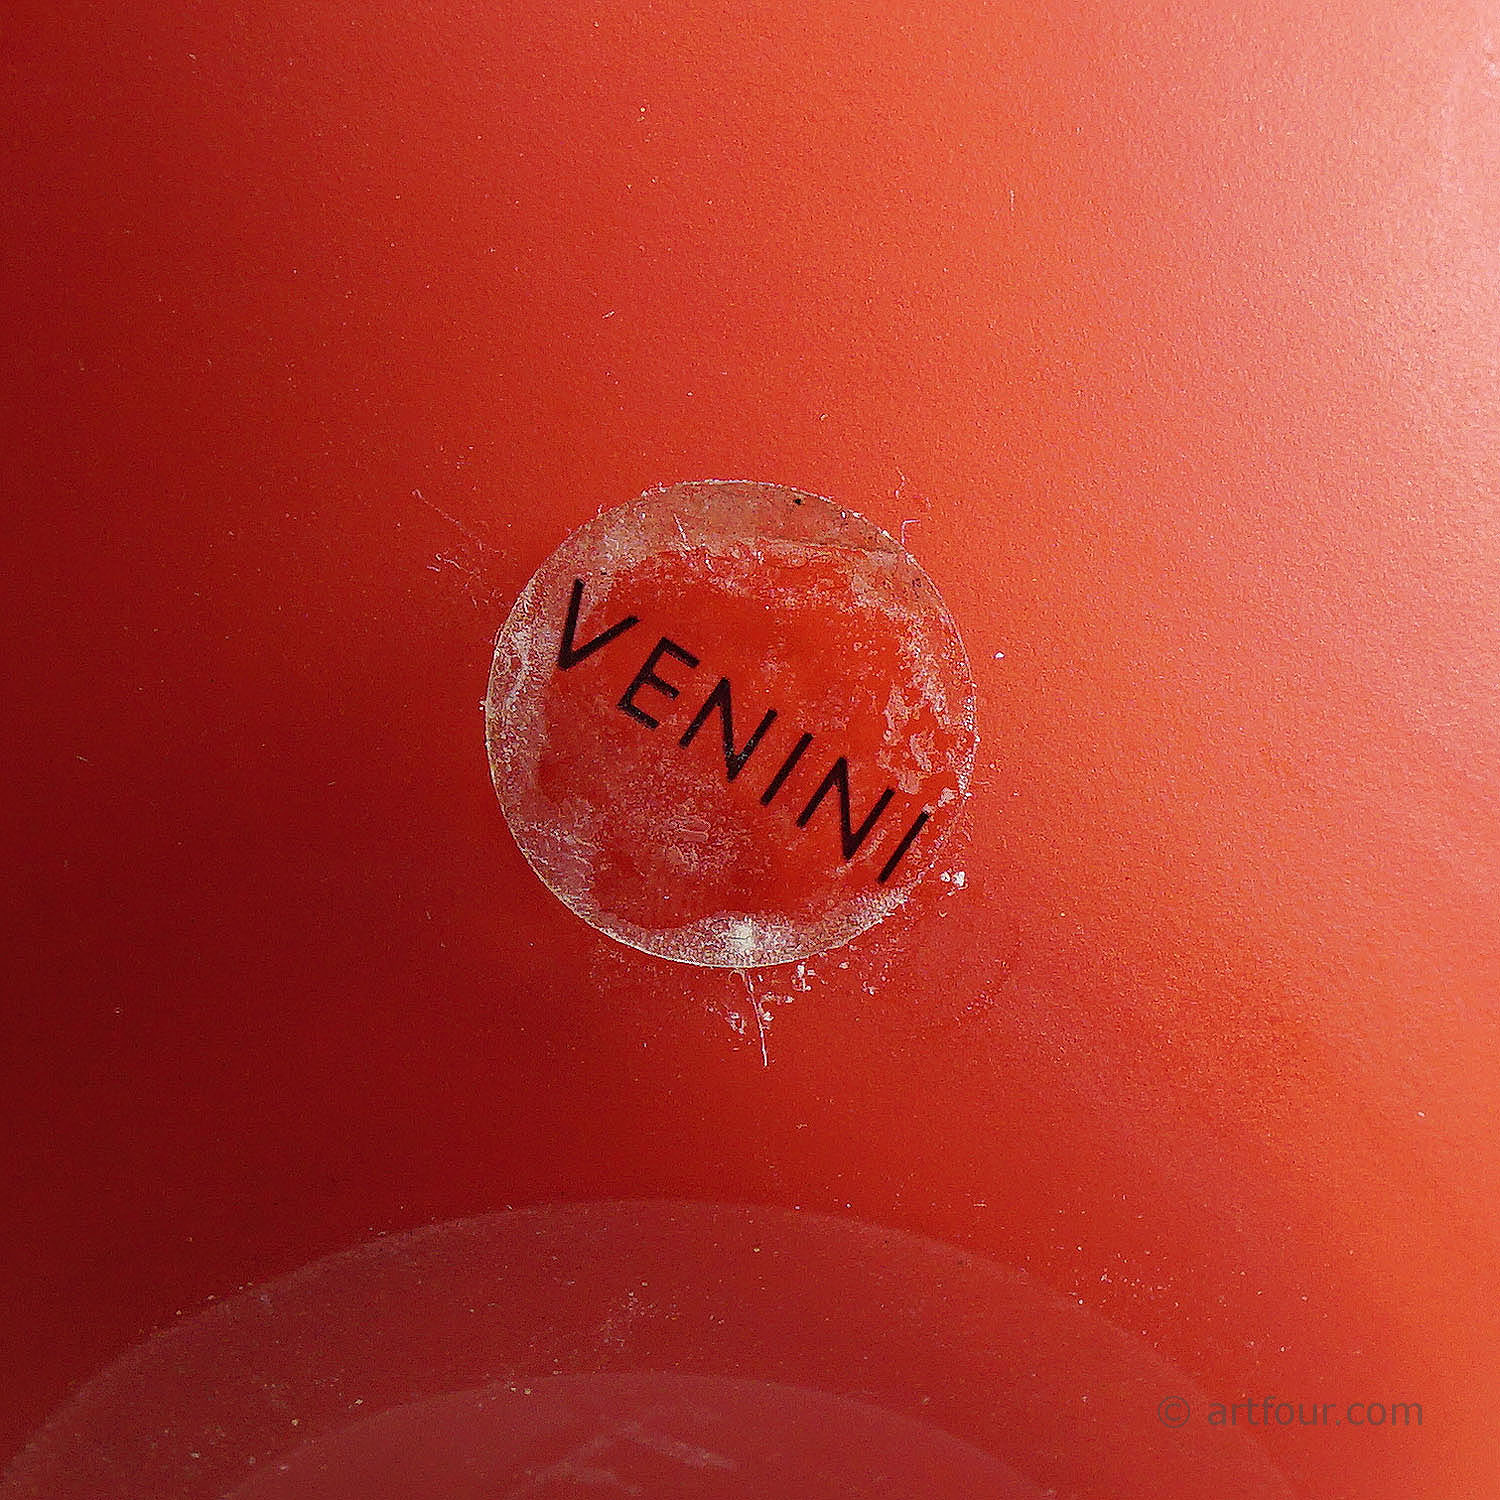 Venini Art Glass Vase of the 